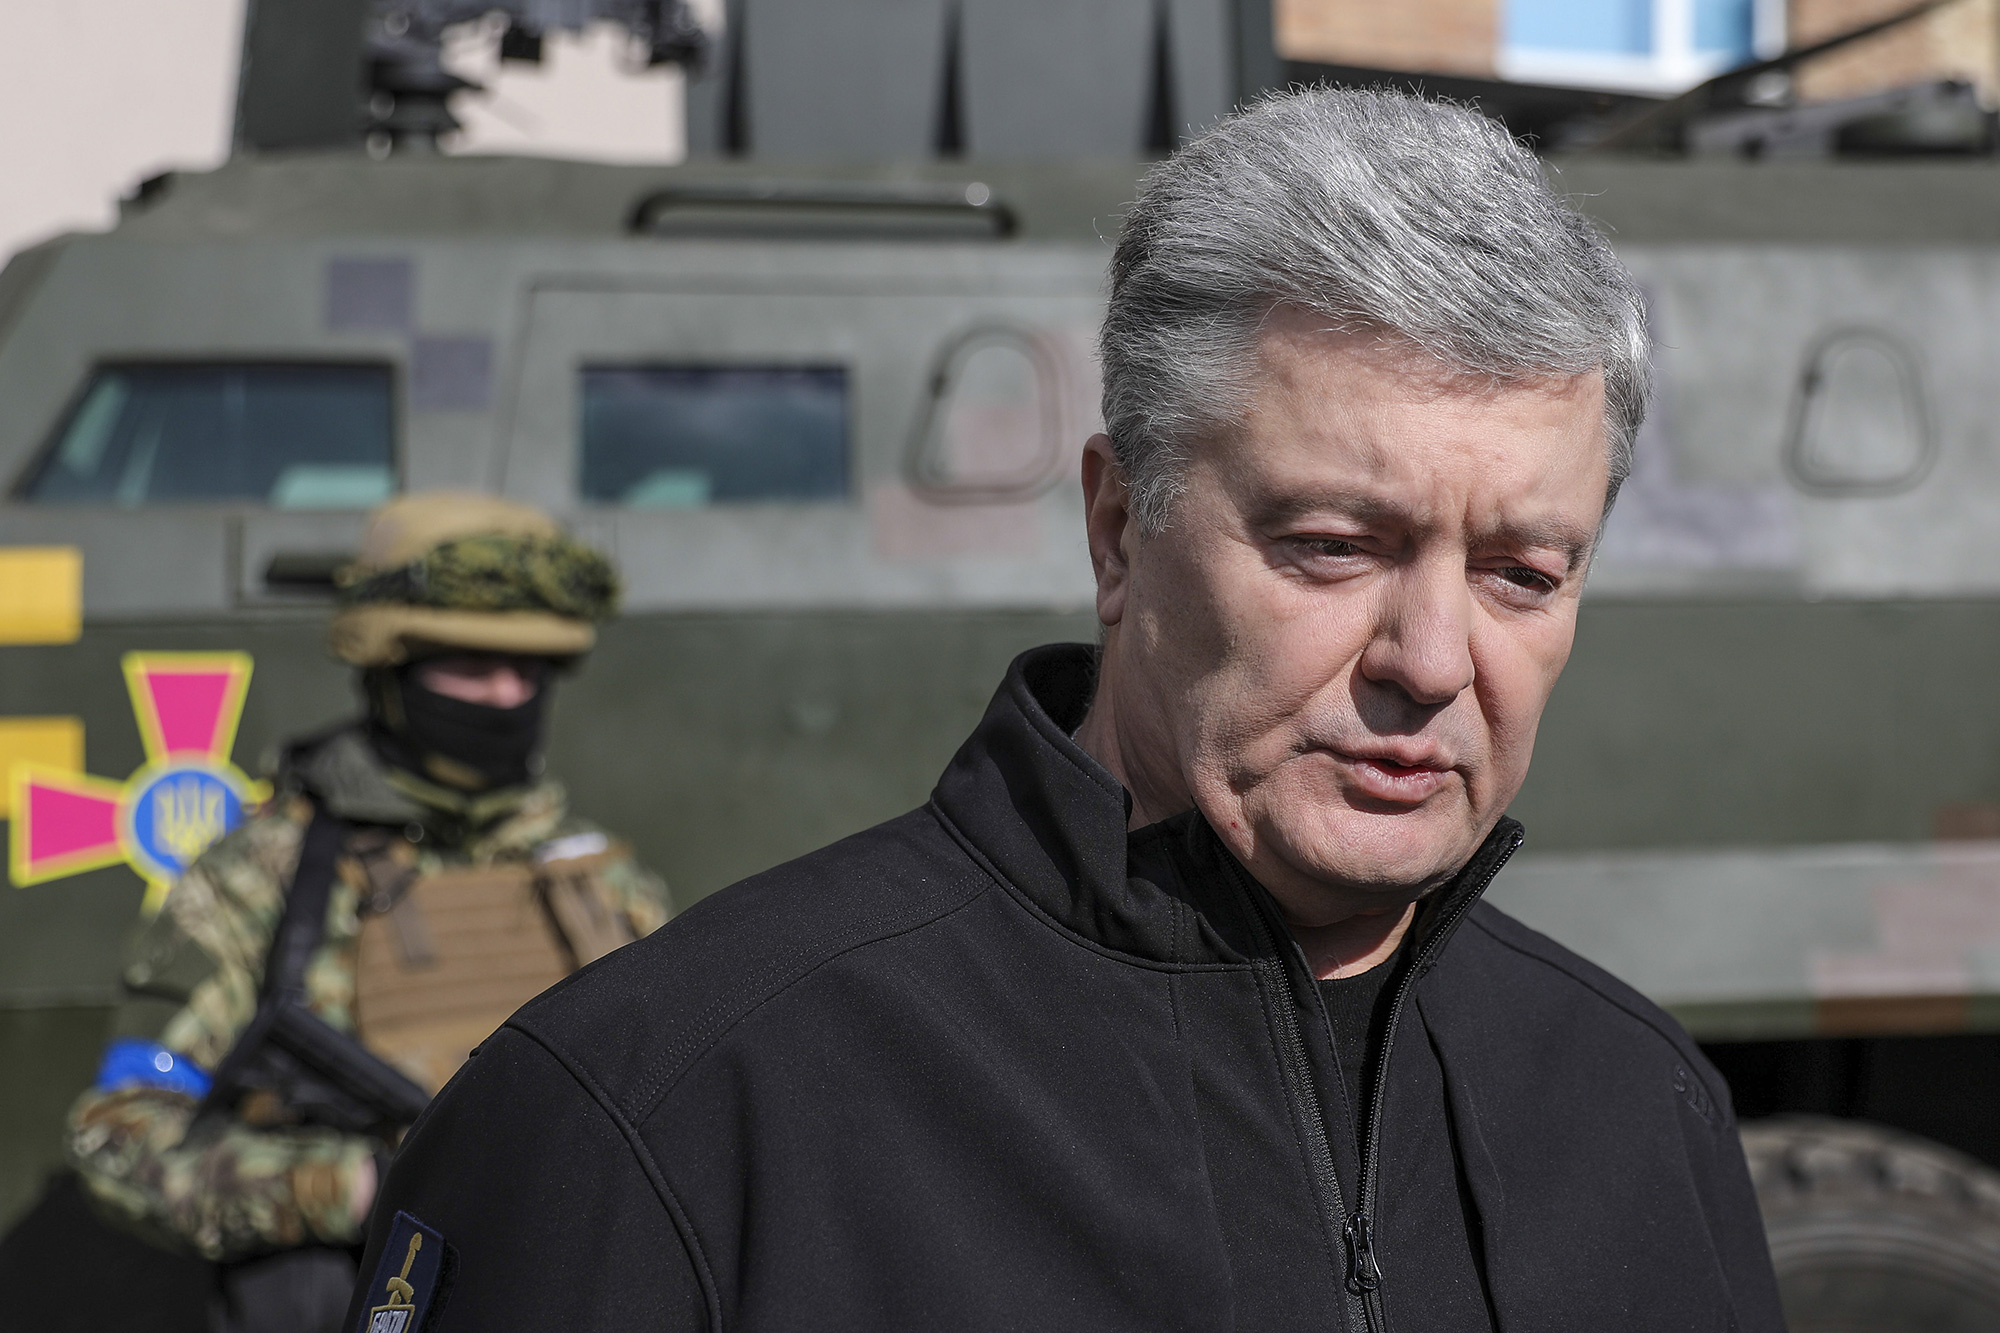 Former President of Ukraine Petro Poroshenko speaks during an interview in Kyiv, Ukraine, on March 18.